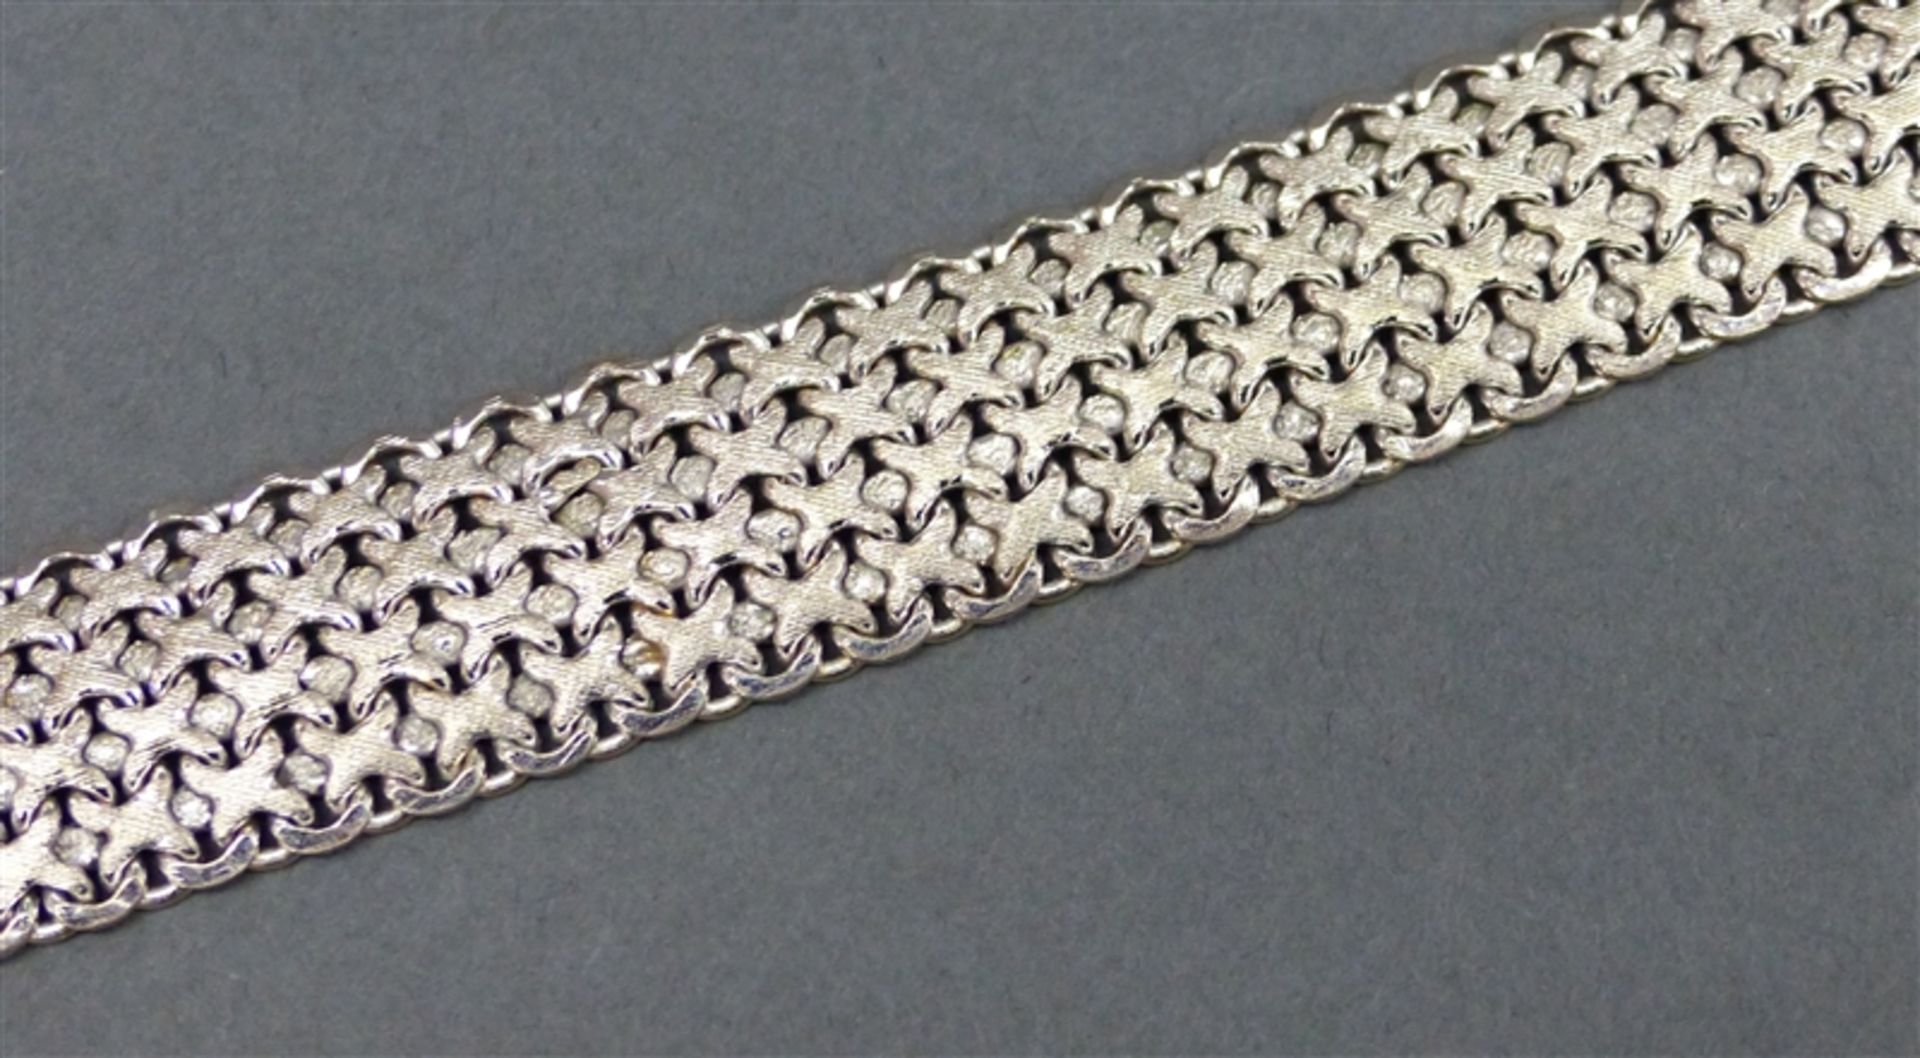 Armband 14 kt. Weißgold, Flechtform, Kastenschloss mit Sicherung, ca. 43 g schwer, b 1,7 cm, l 19,